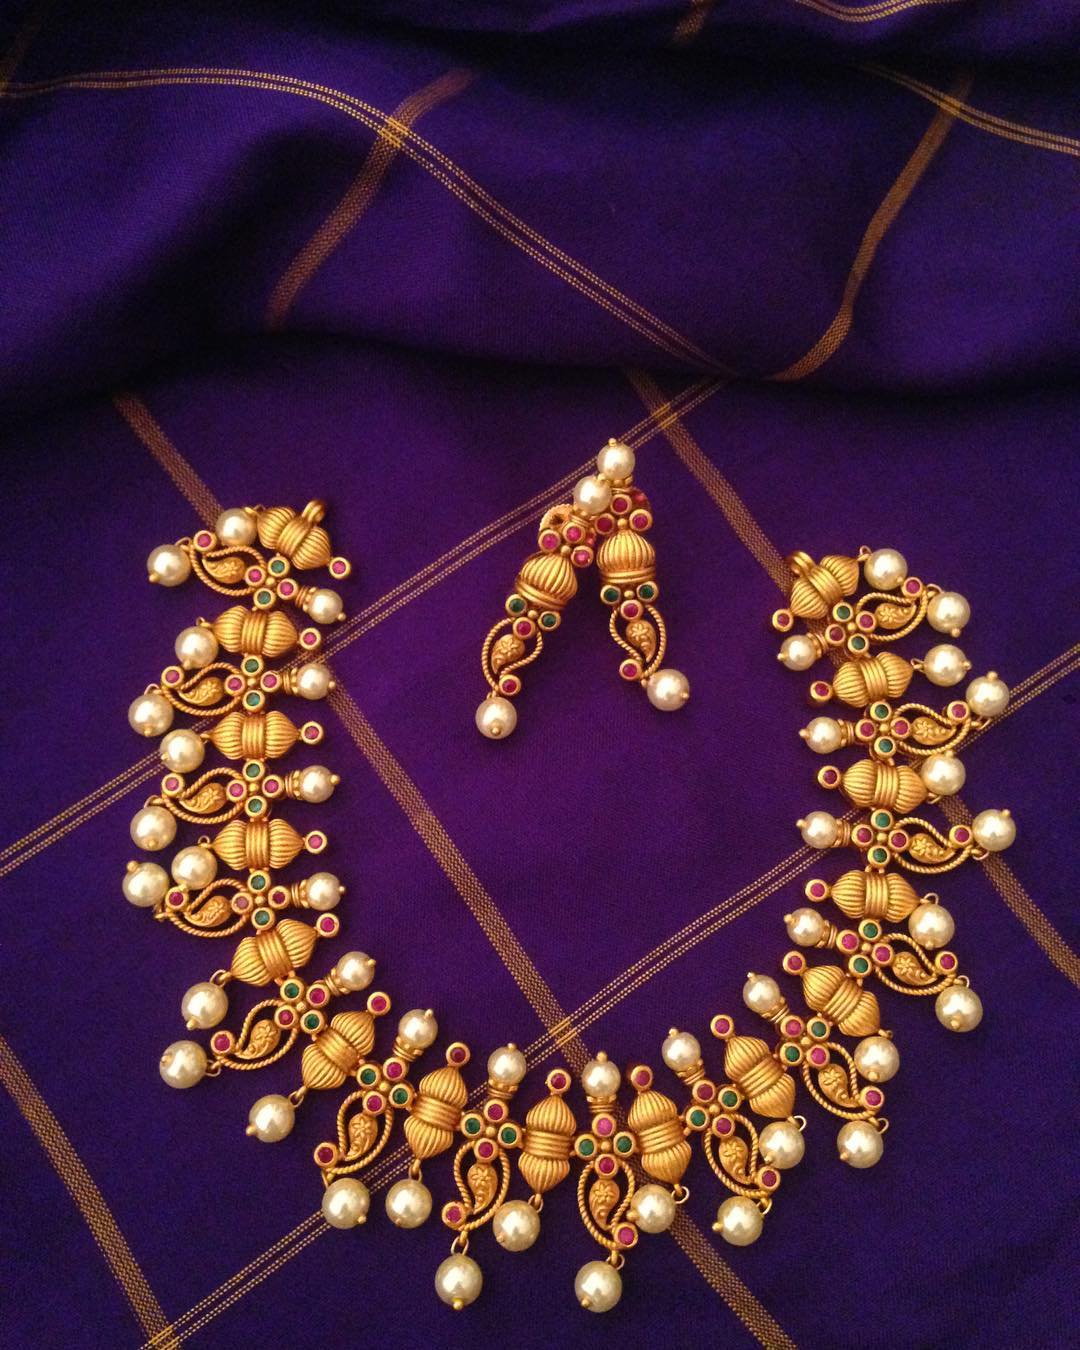 surashaa jewelleries